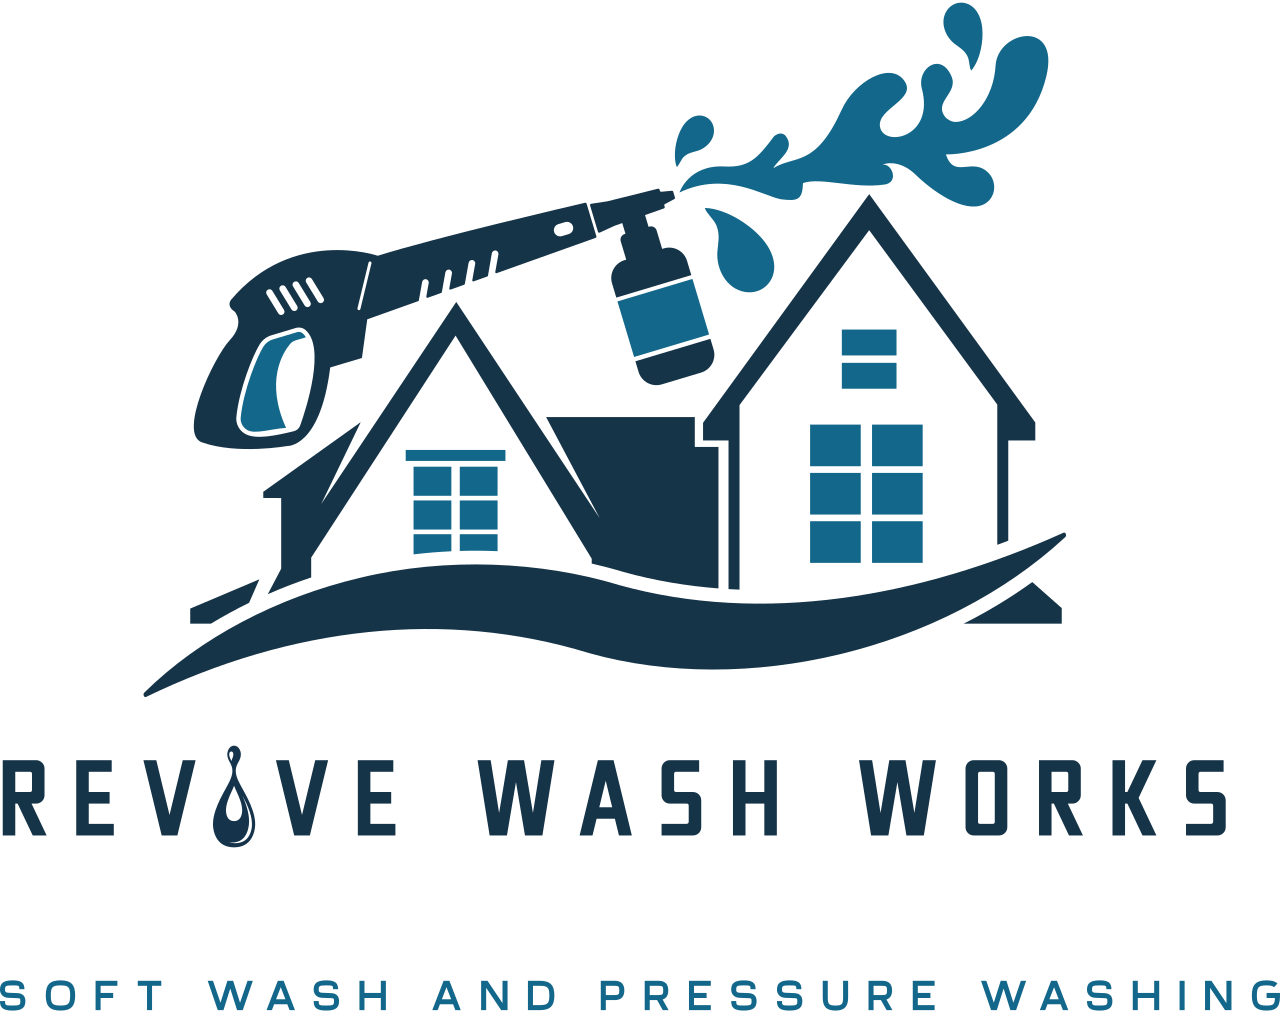 Rev ve wash works's logo